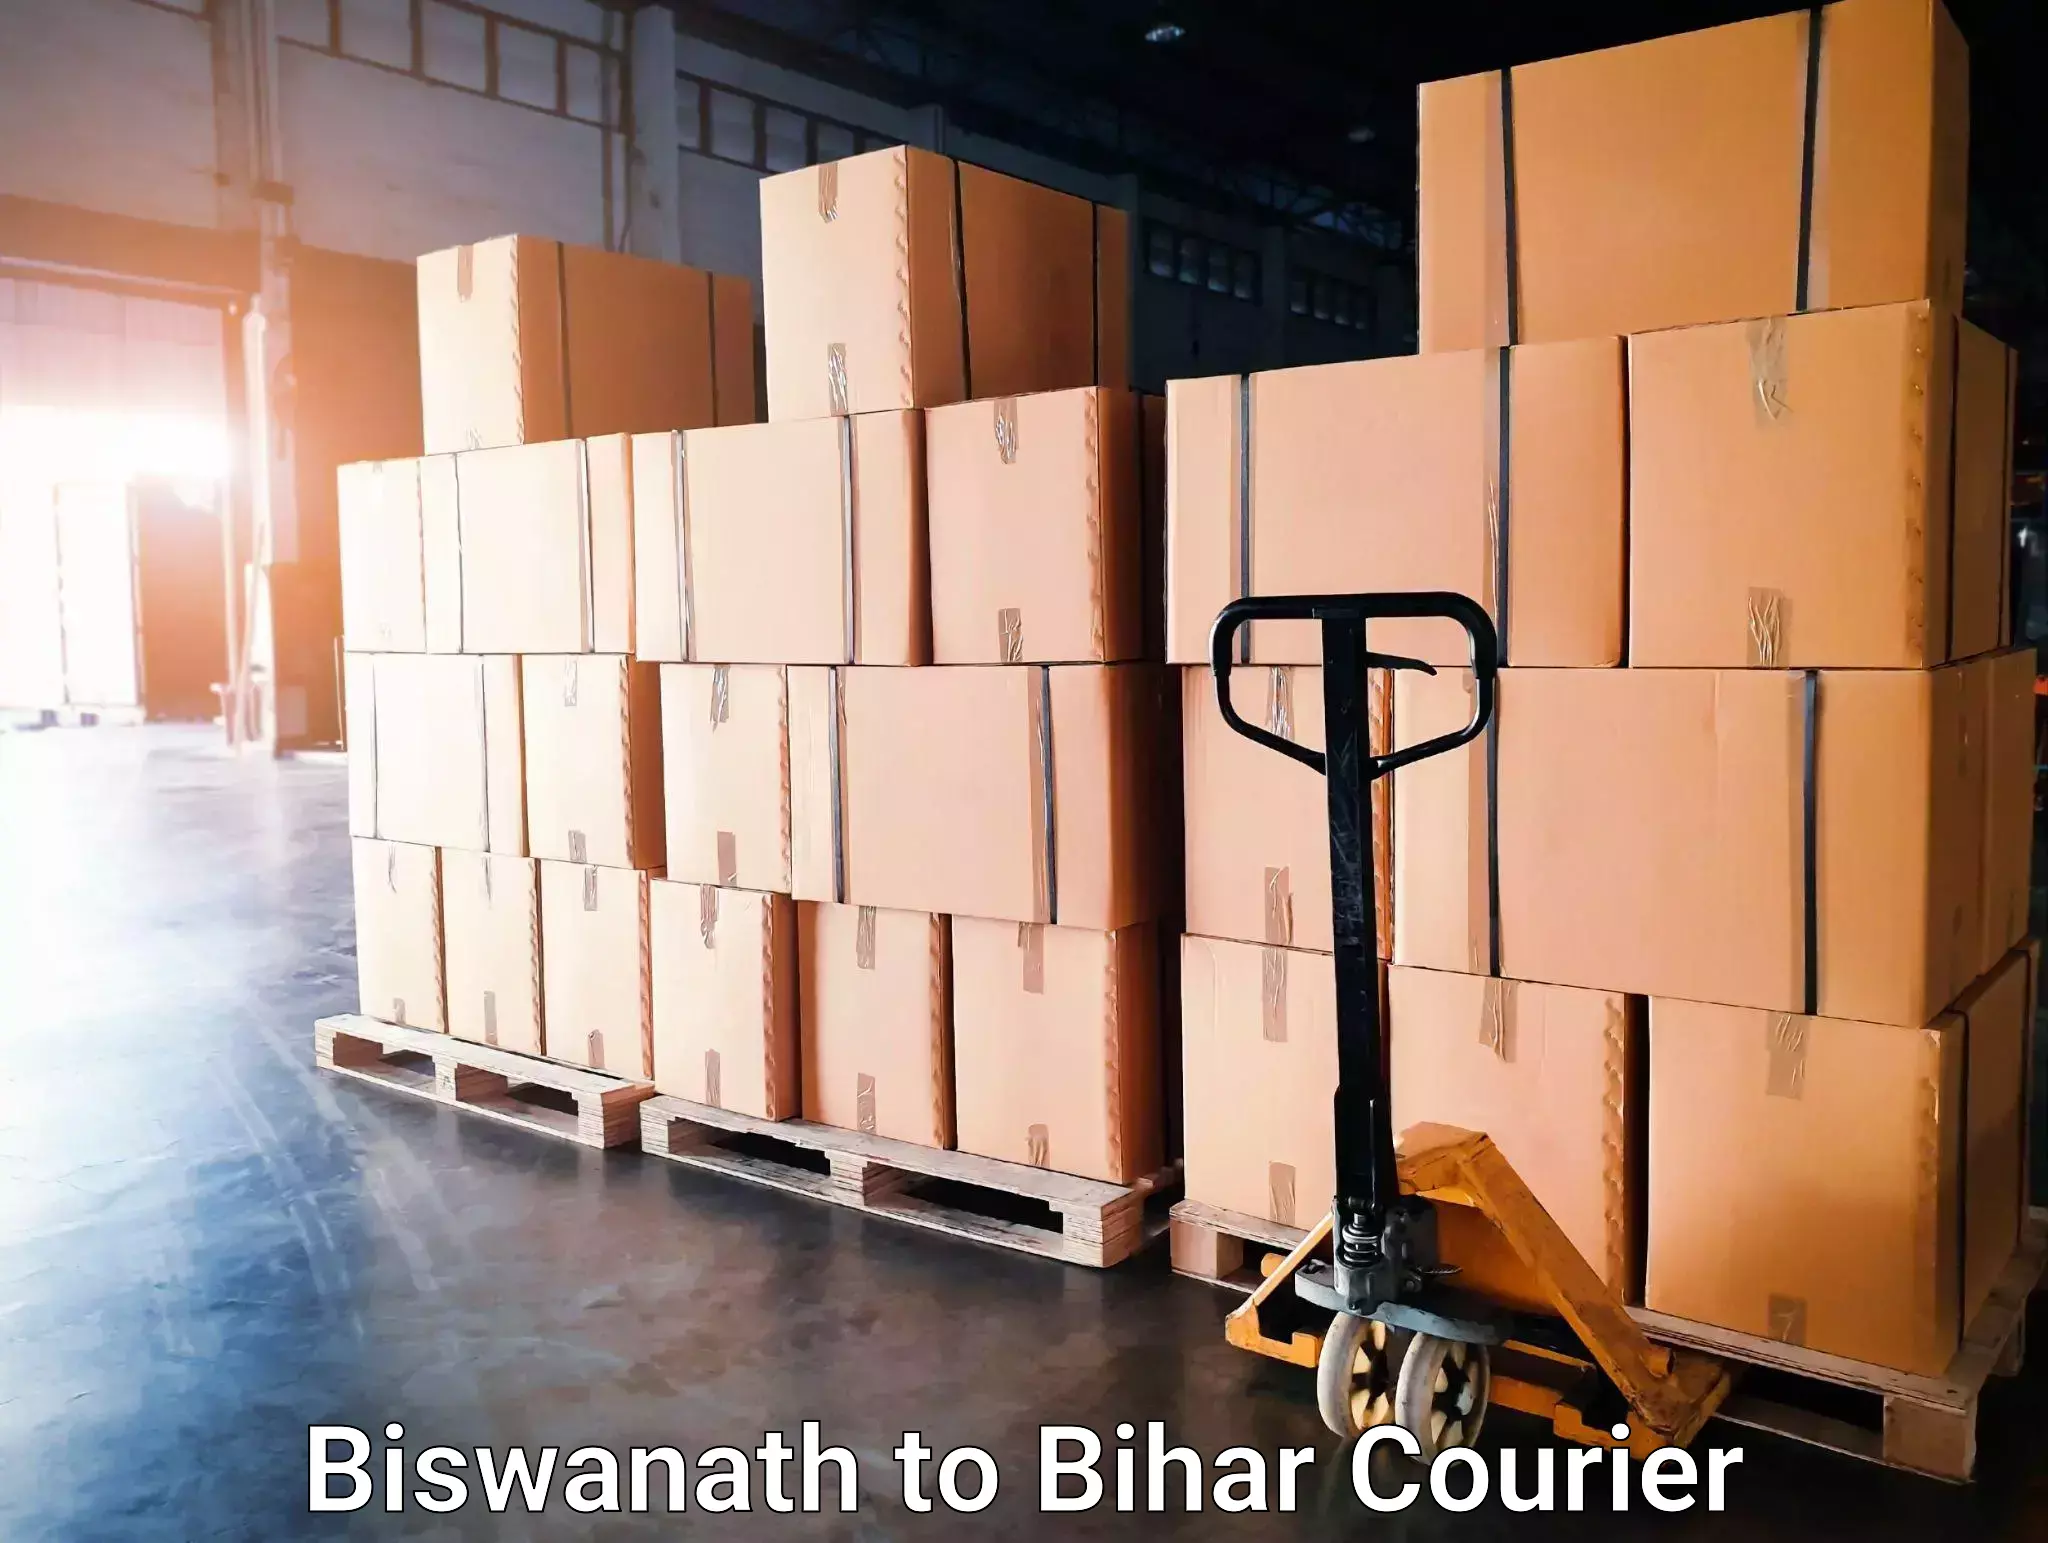 Next-day freight services Biswanath to Bihar